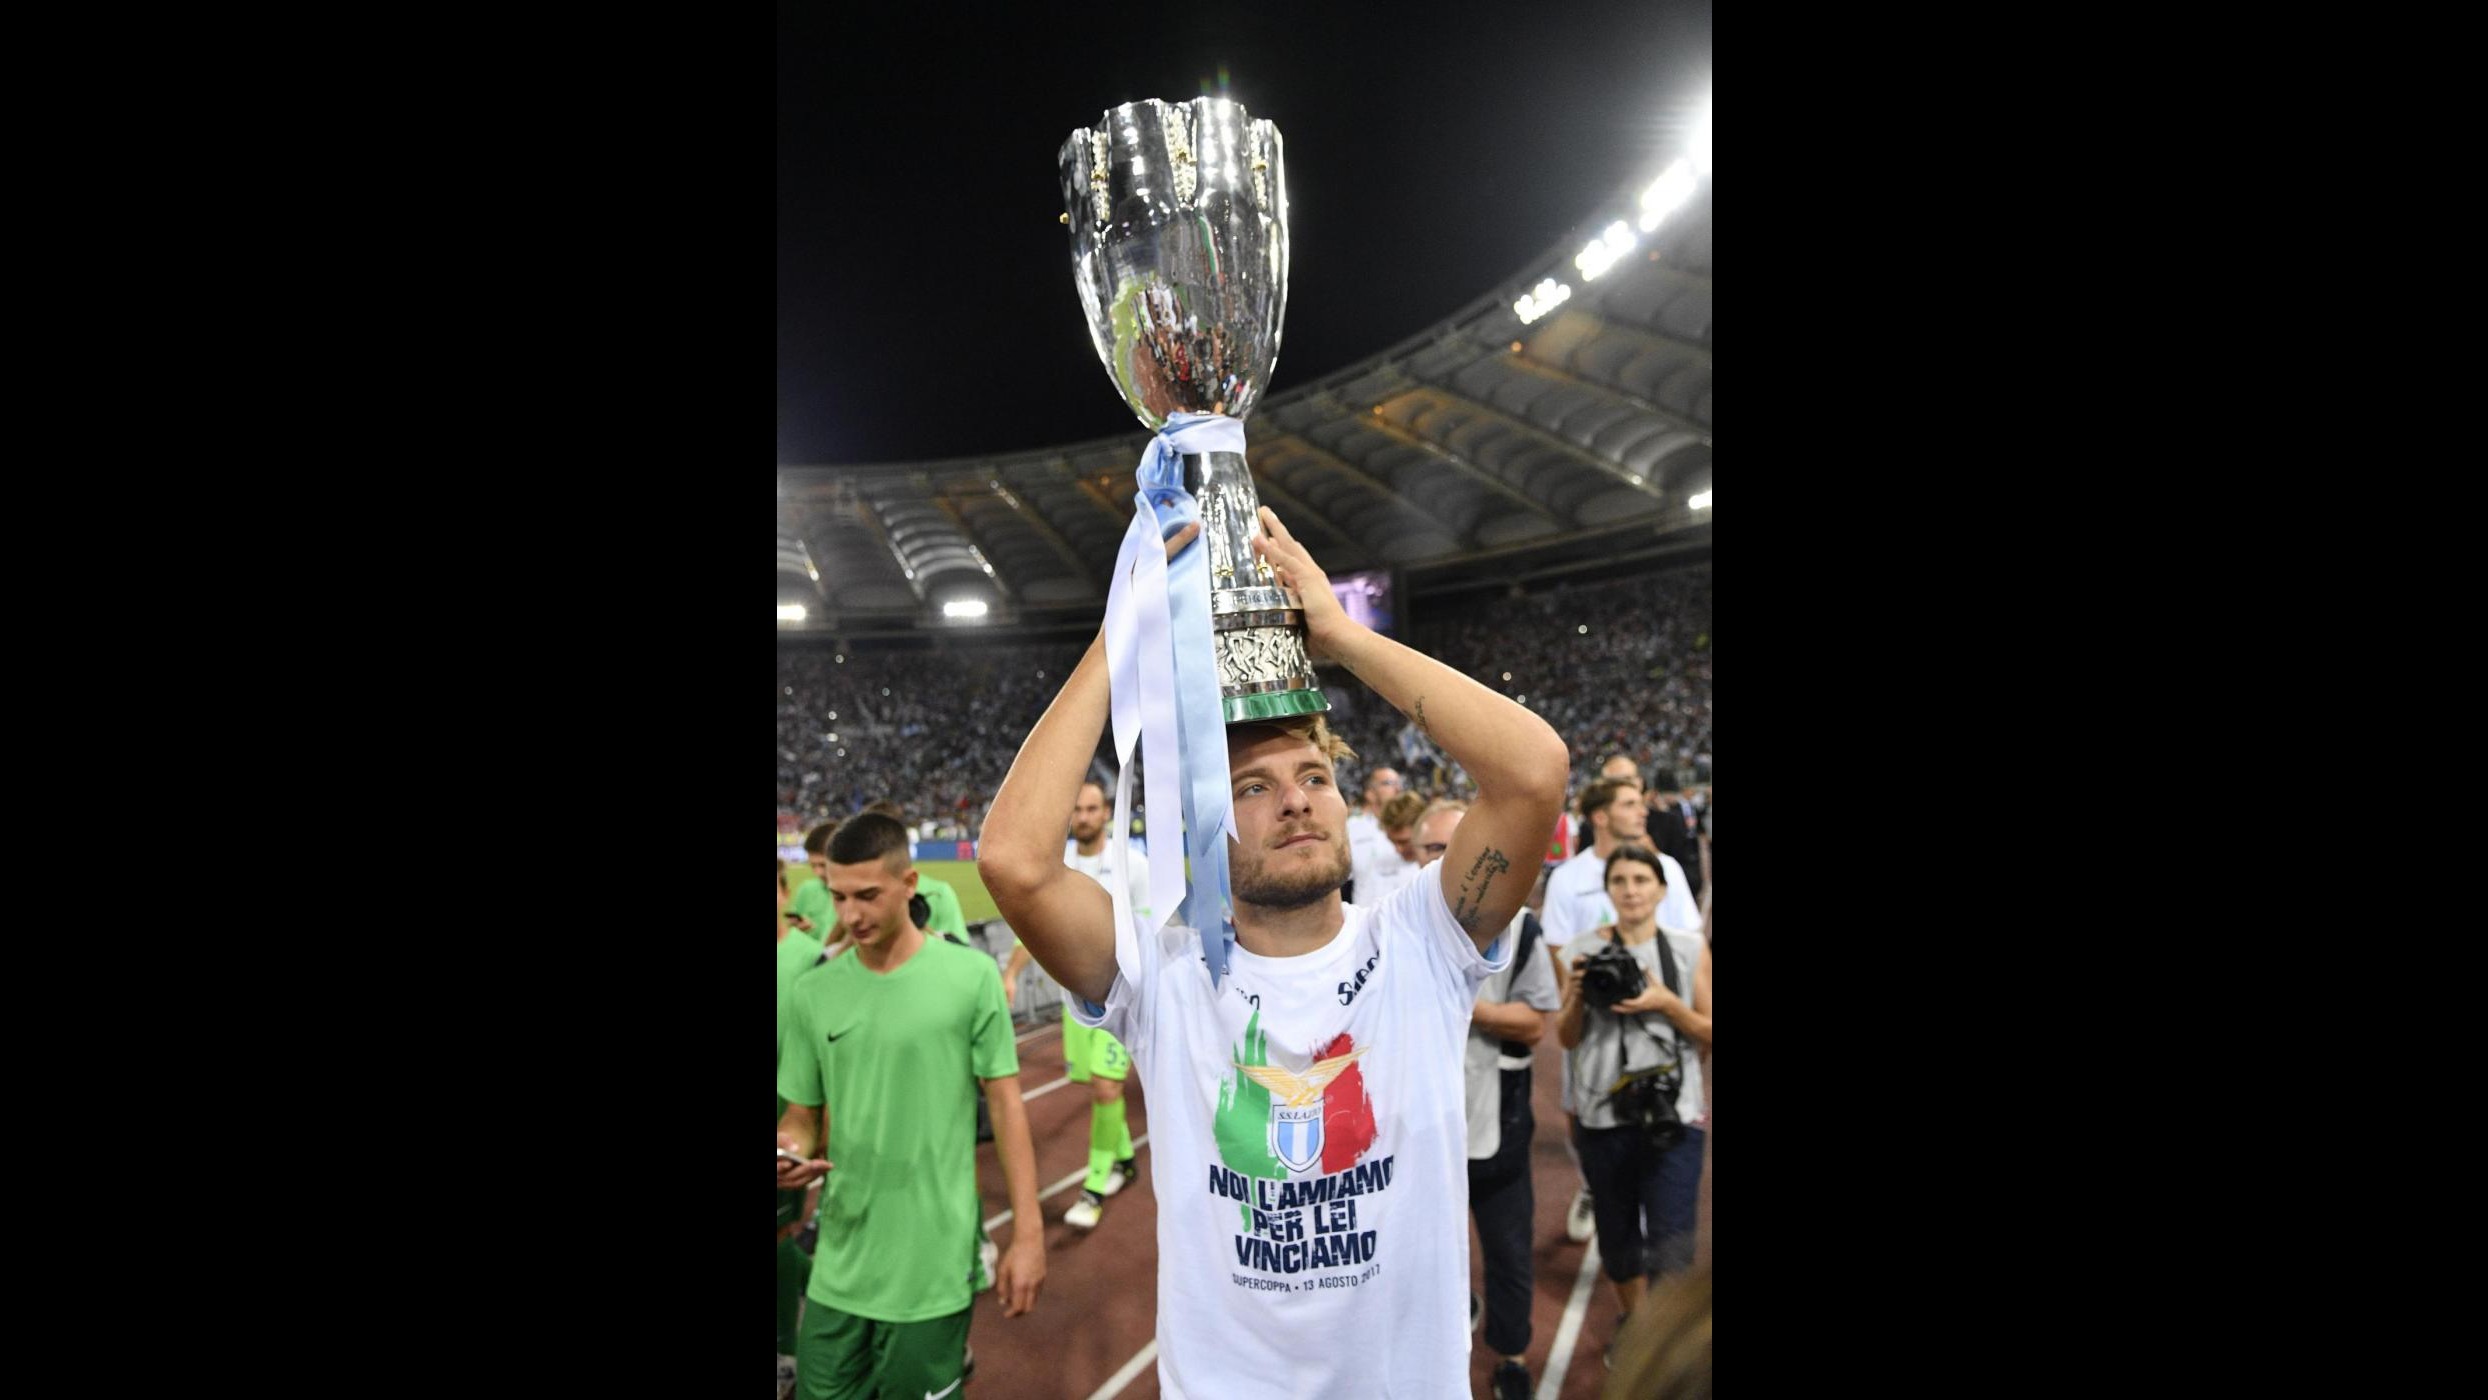 FOTO Supercoppa 2017, la vittoria della Lazio